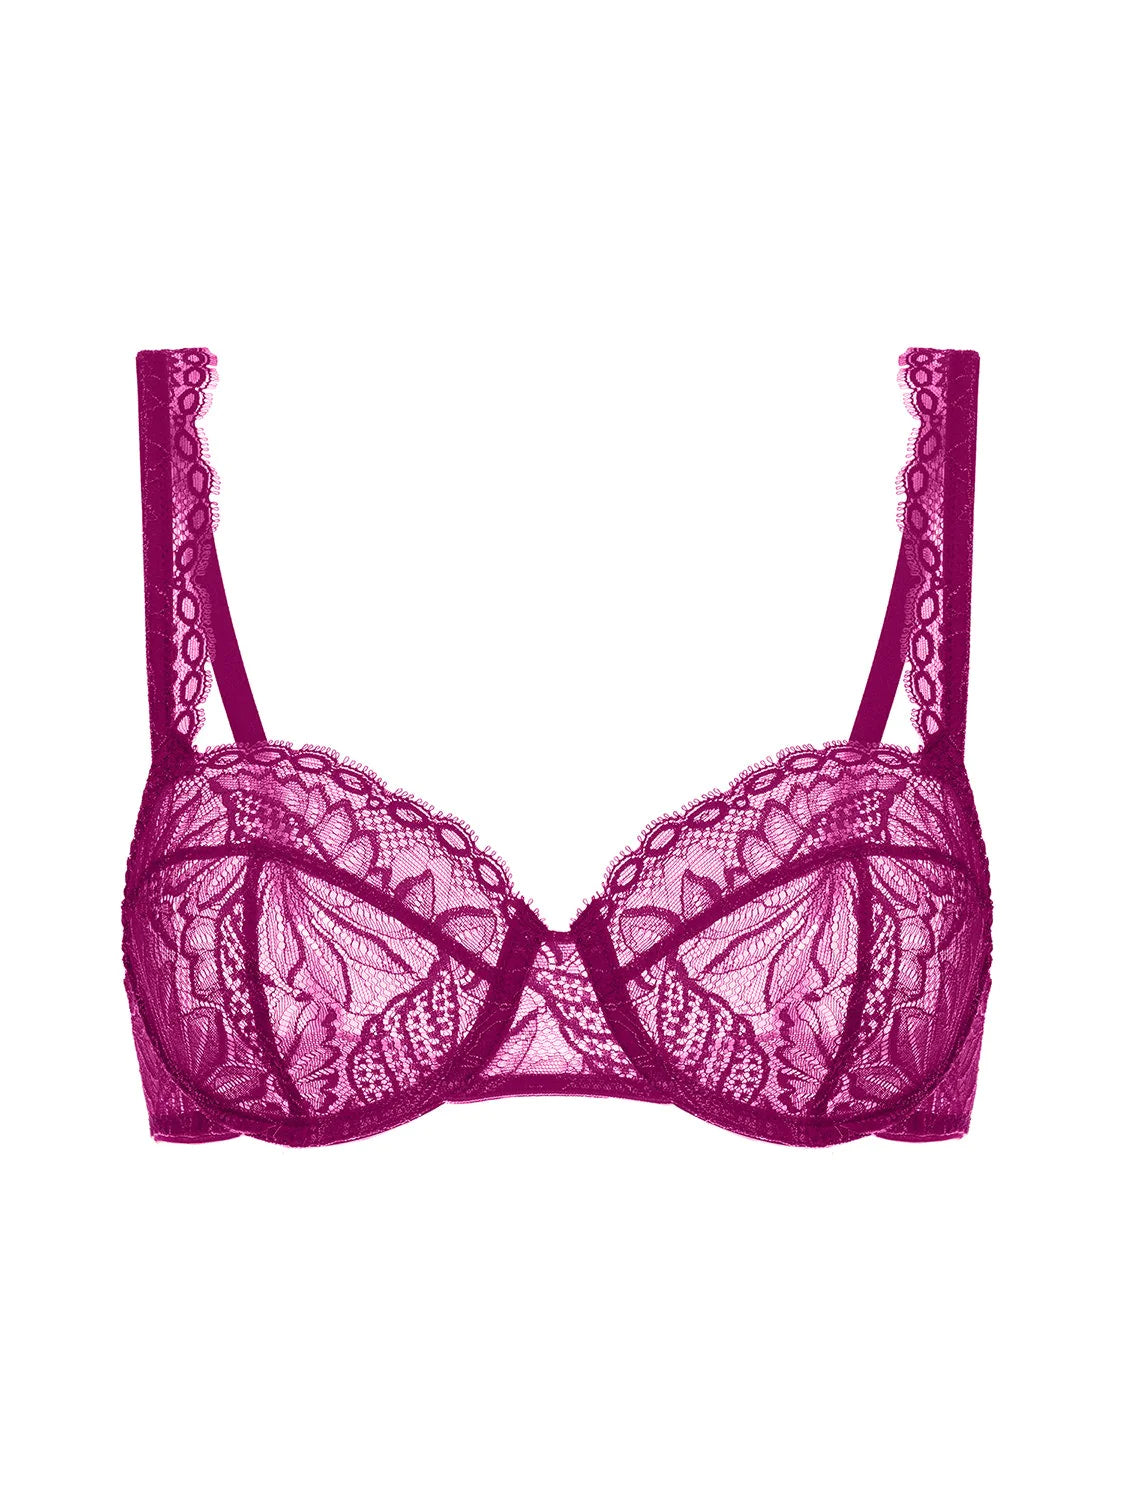 Exotica Sheer Demi Bra - Raspberry - Flirt! Luxe Lingerie & Sleepwear